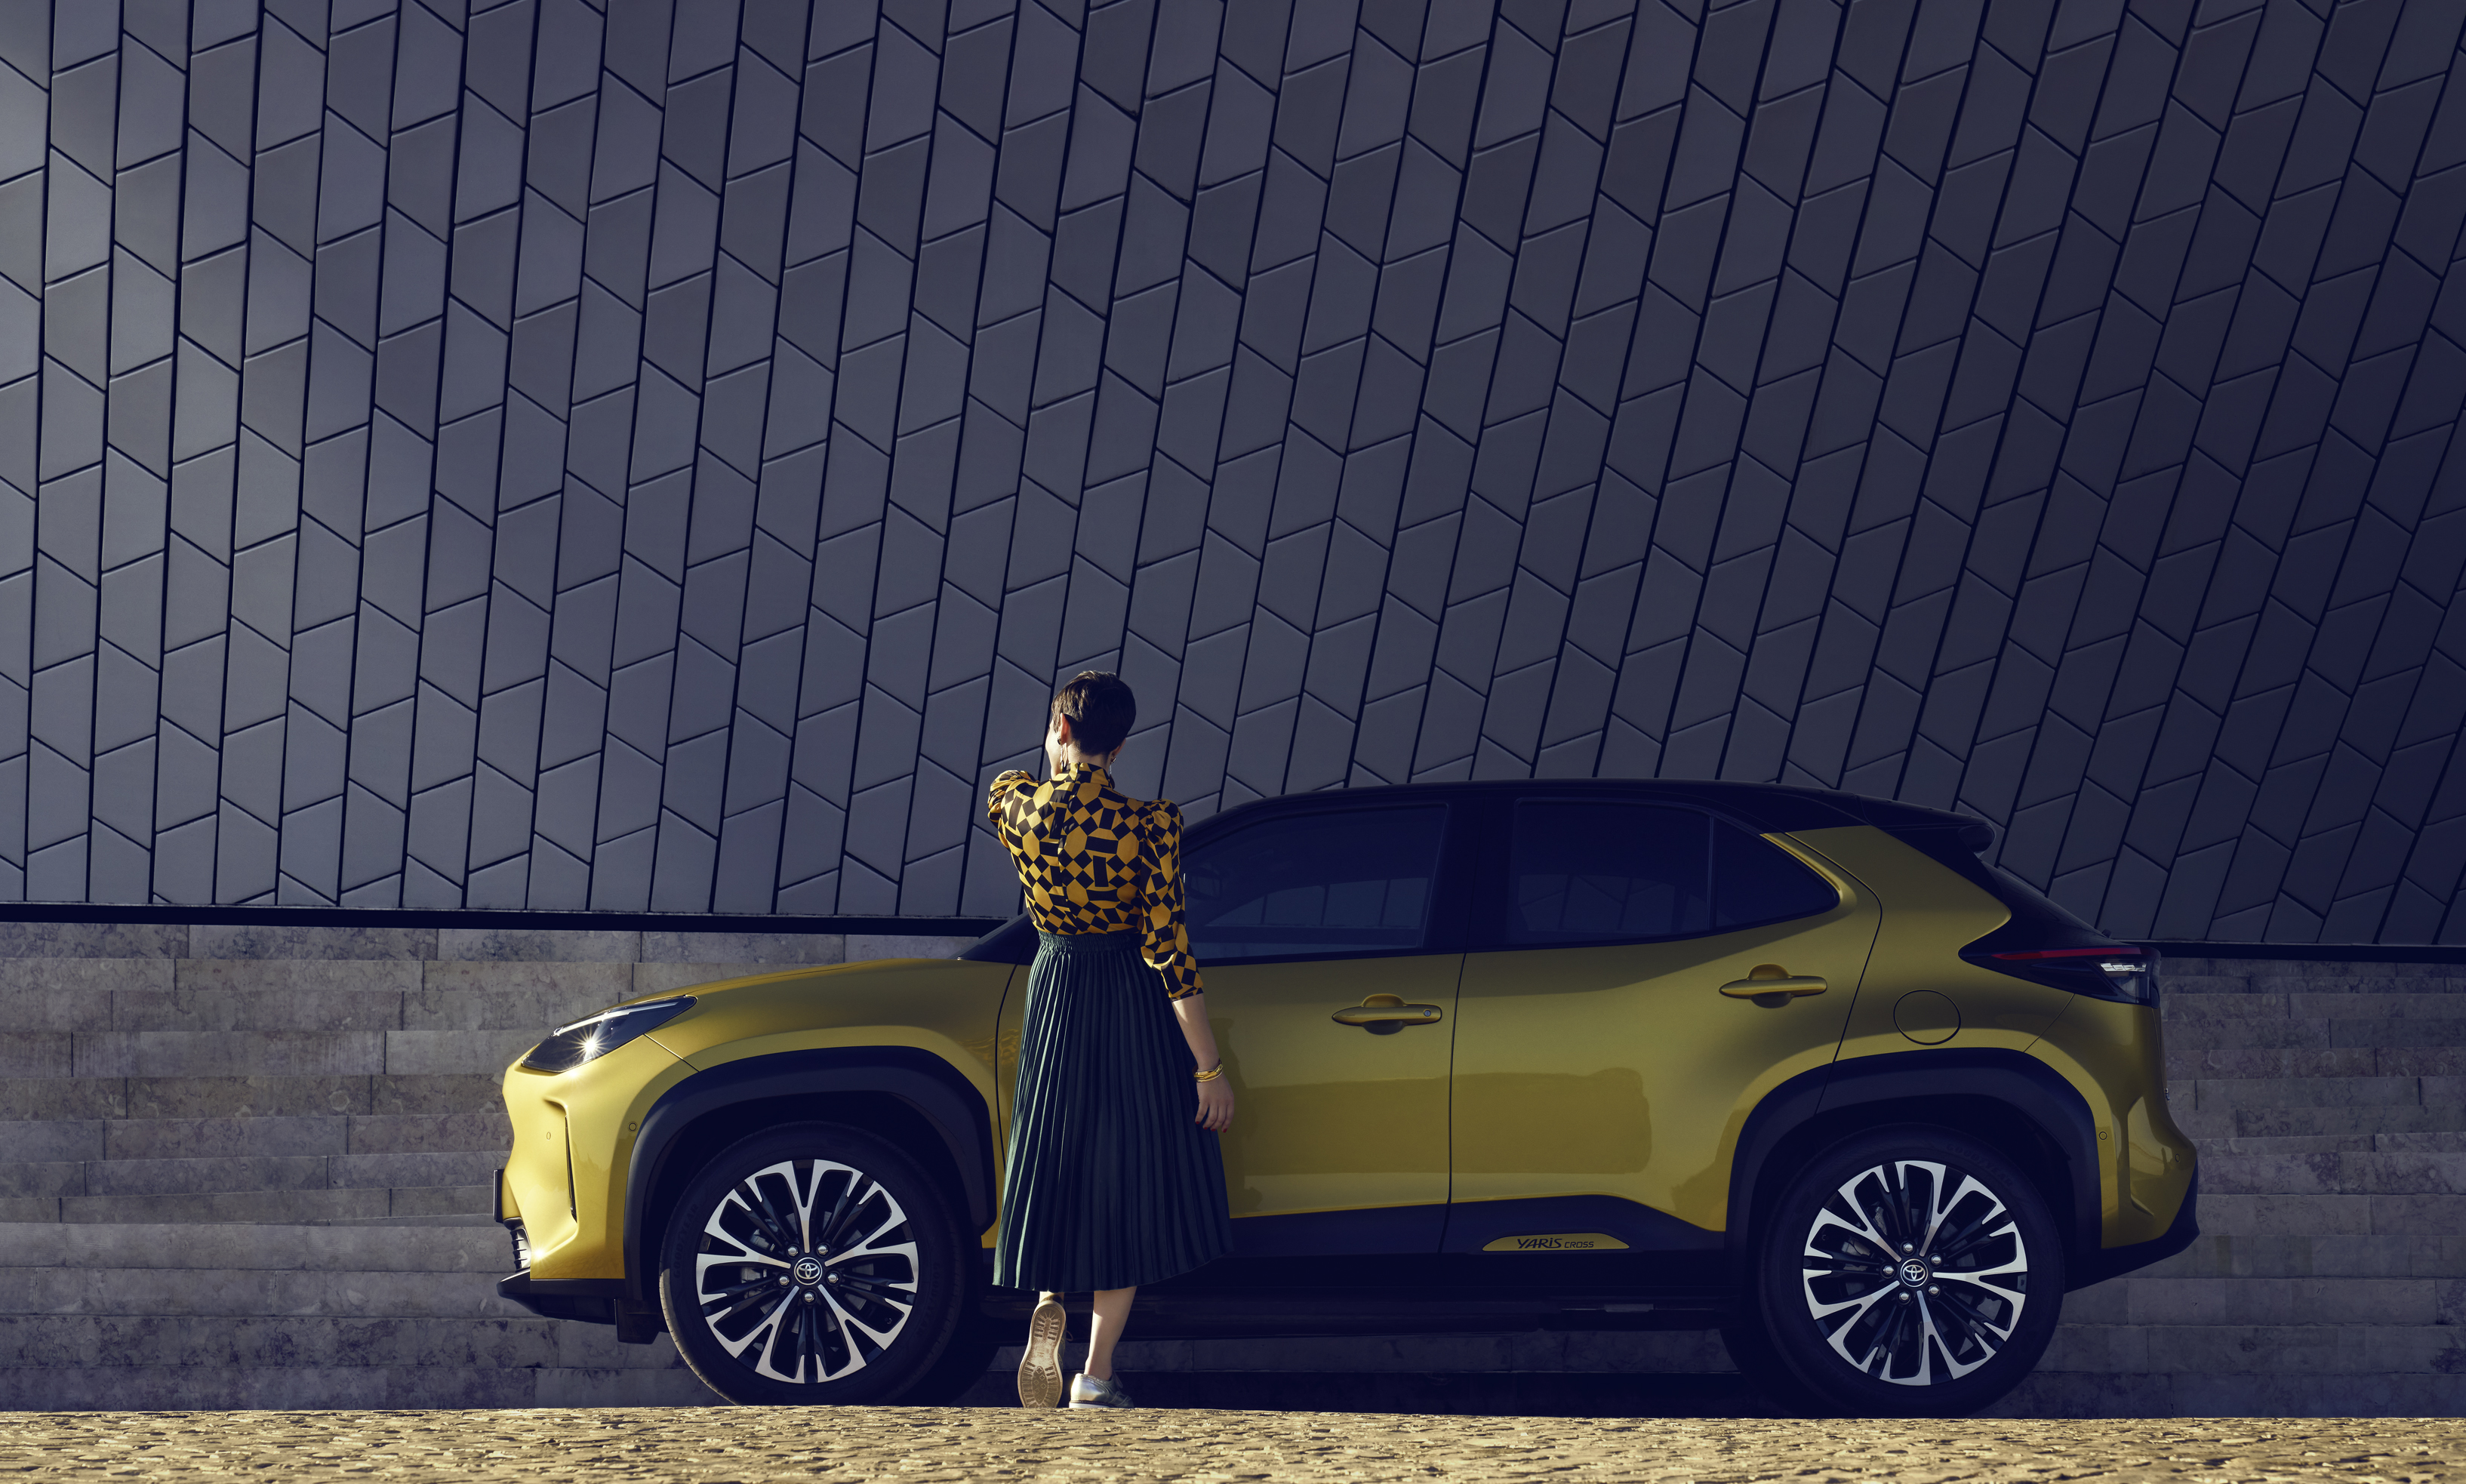 Toyota-Yaris-cross-exterieur-geel-zijkant-vrouw